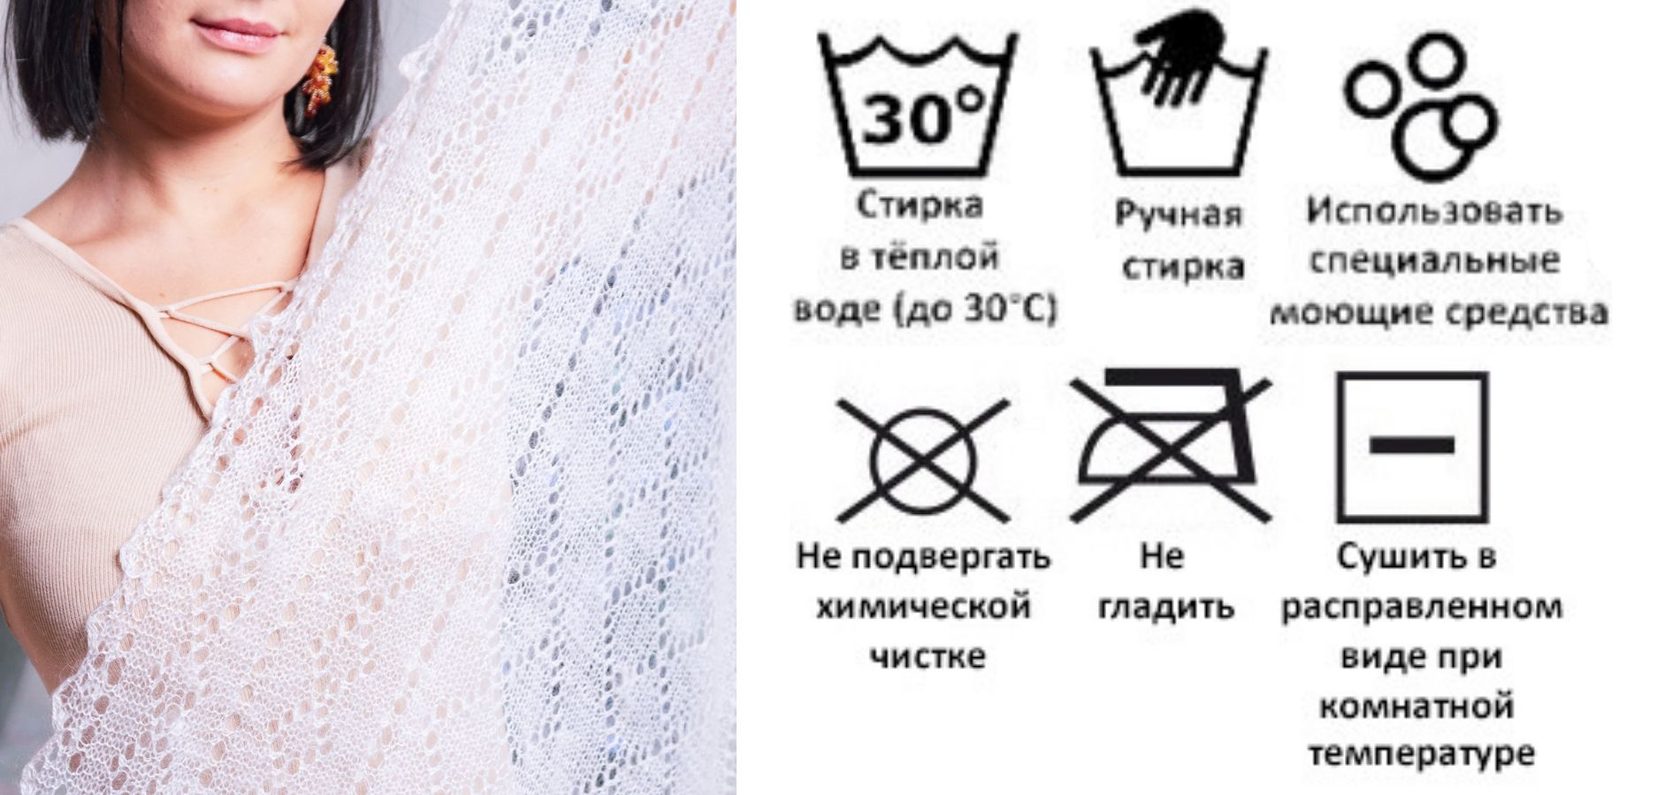 Термобельё из шерсти меринос - что такое и как его стирать